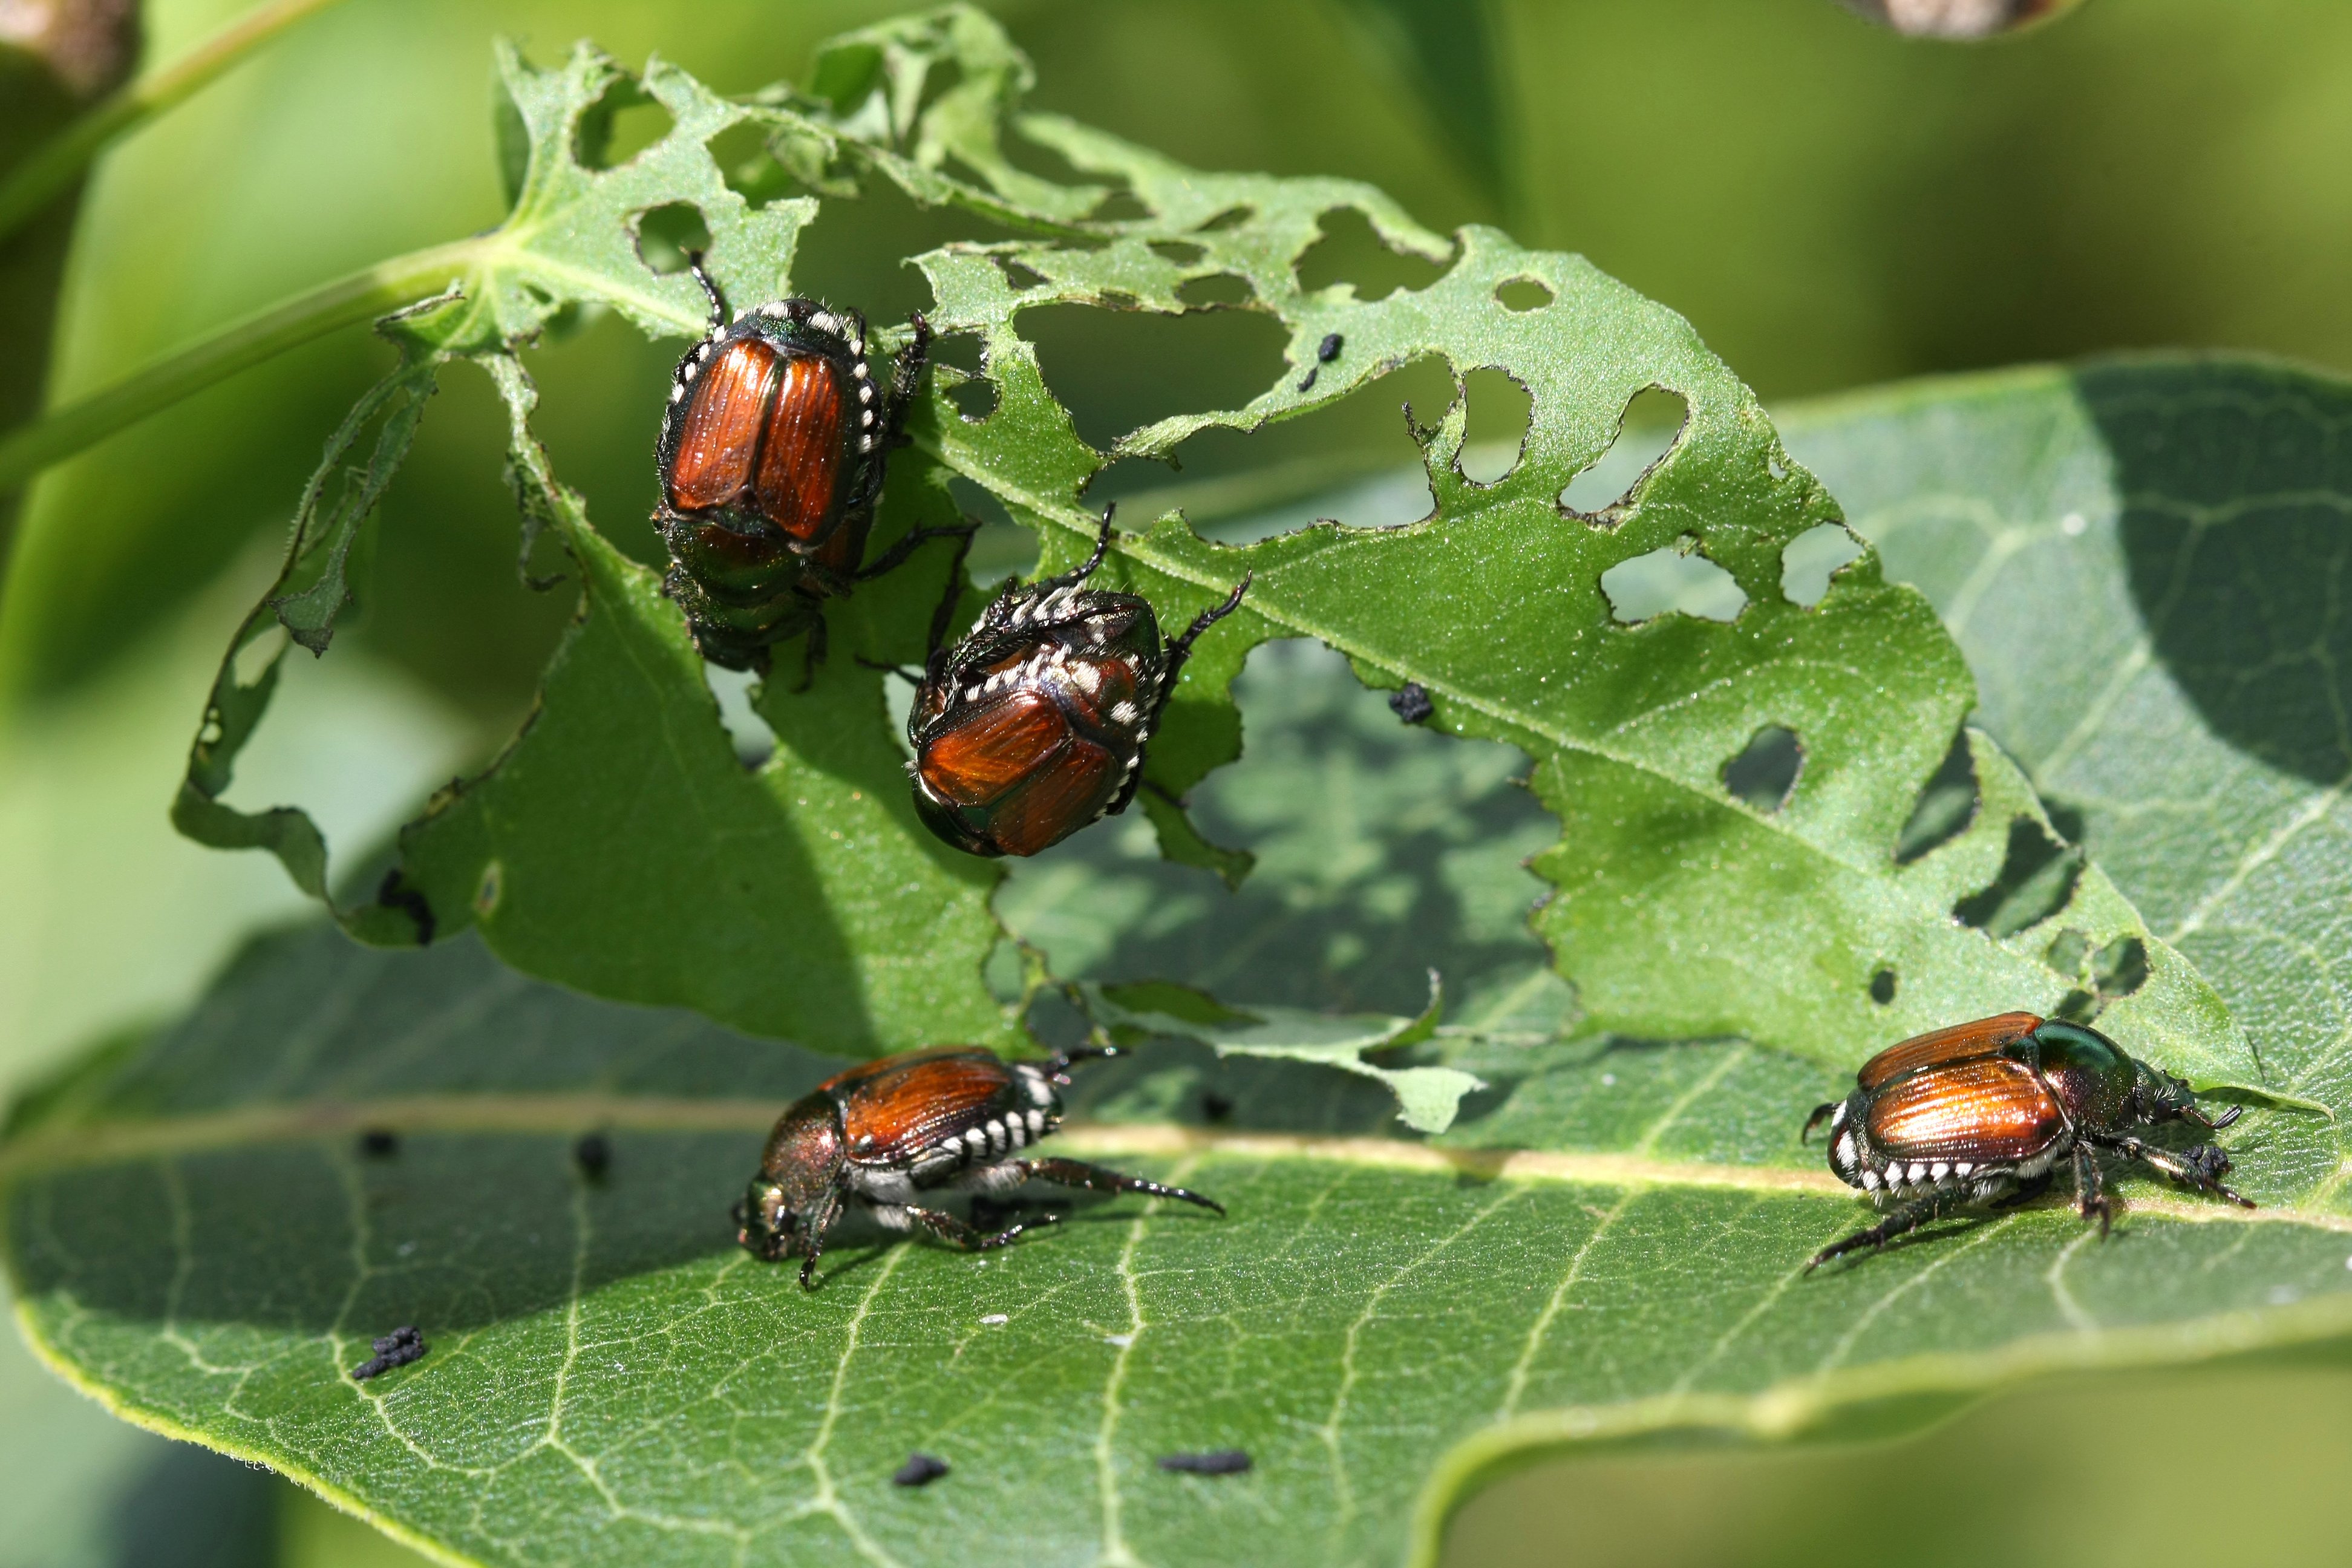 japanese beetles on leaf